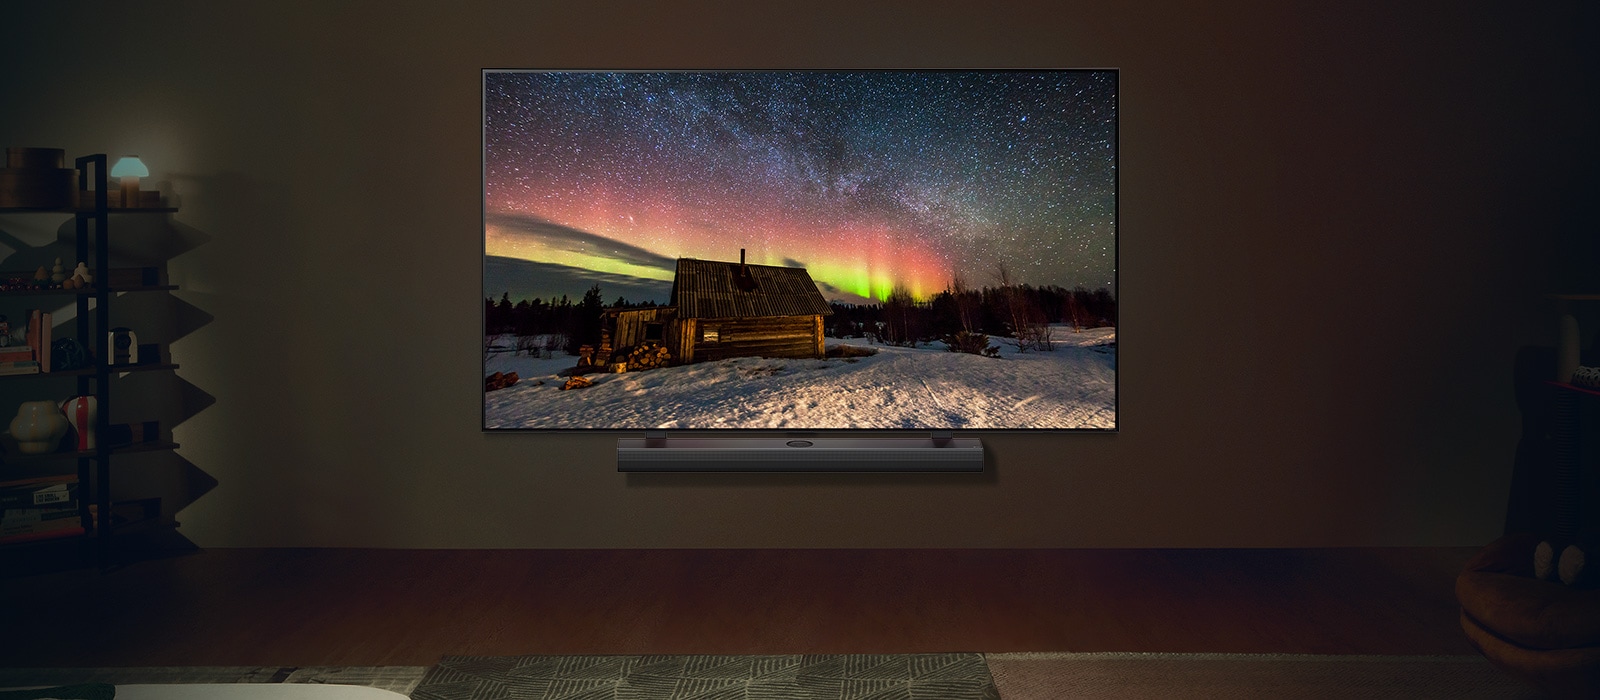 Le téléviseur de LG et la barre de son de LG dans une pièce moderne pendant la nuit. Une image d'aurores boréales s’affiche à l'écran avec les niveaux de luminosité idéaux.